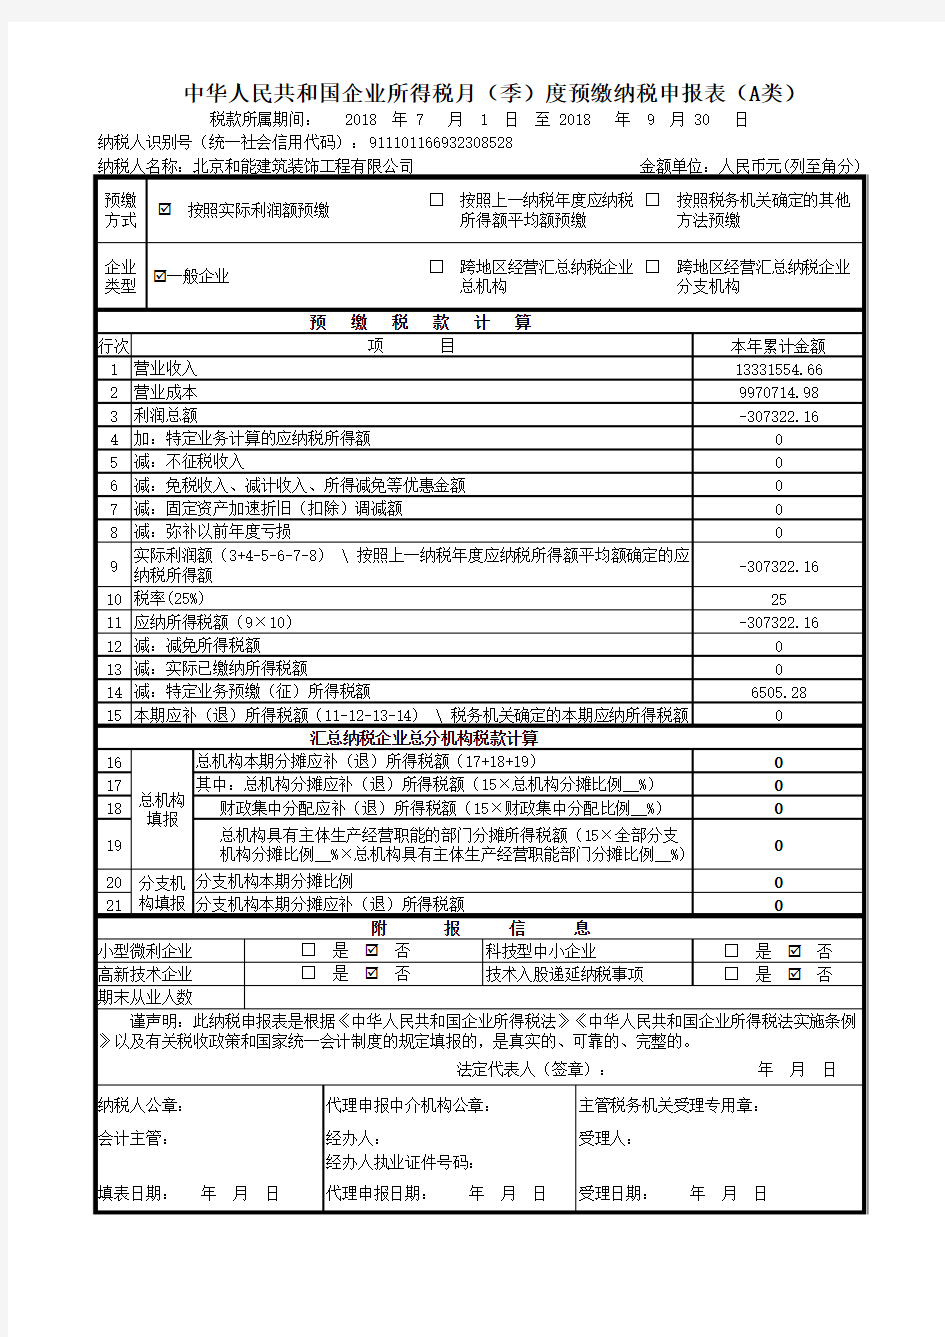 中华人民共和国企业所得税月(季)度预缴纳税申报表(A类2018年版)